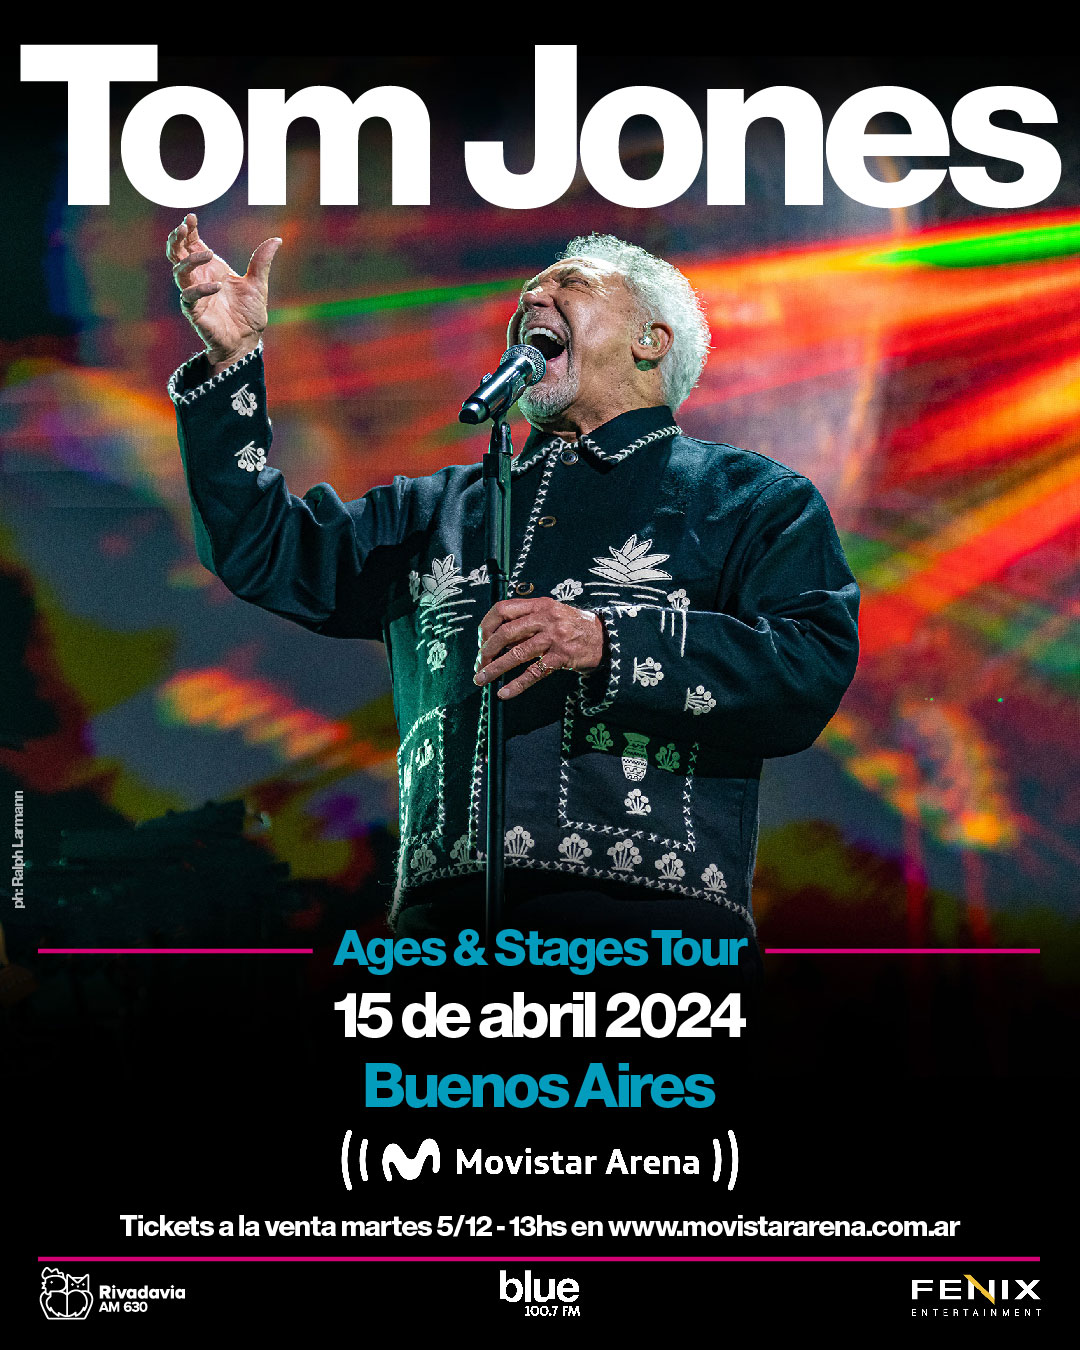 TOM JONES SE PRESENTARÁ EL 15 DE ABRIL DE 2024 EN EL MARCO DEL AGES & STAGES TOUR EN EL ESTADIO MOVISTAR ARENA DE LA CIUDAD DE BUENOS AIRES.